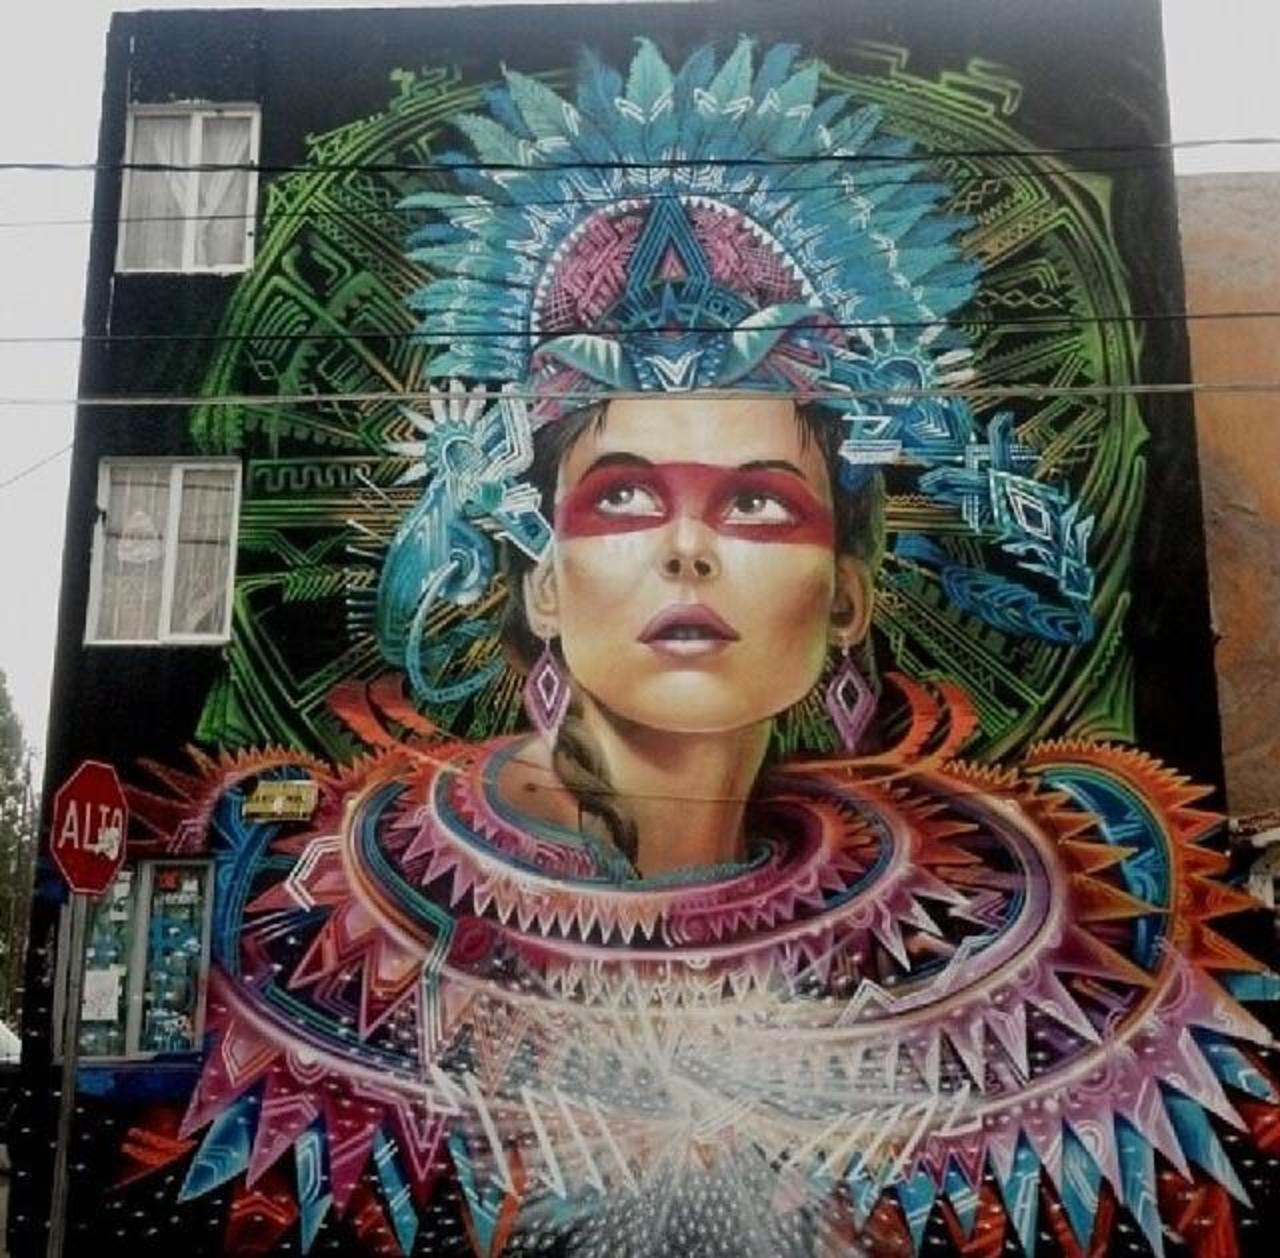 'Espectral Cauac Azul' glorious Street Art in Mexico #art #graffiti #mural #streetart http://t.co/l3RRbRxAYq via @designopinion